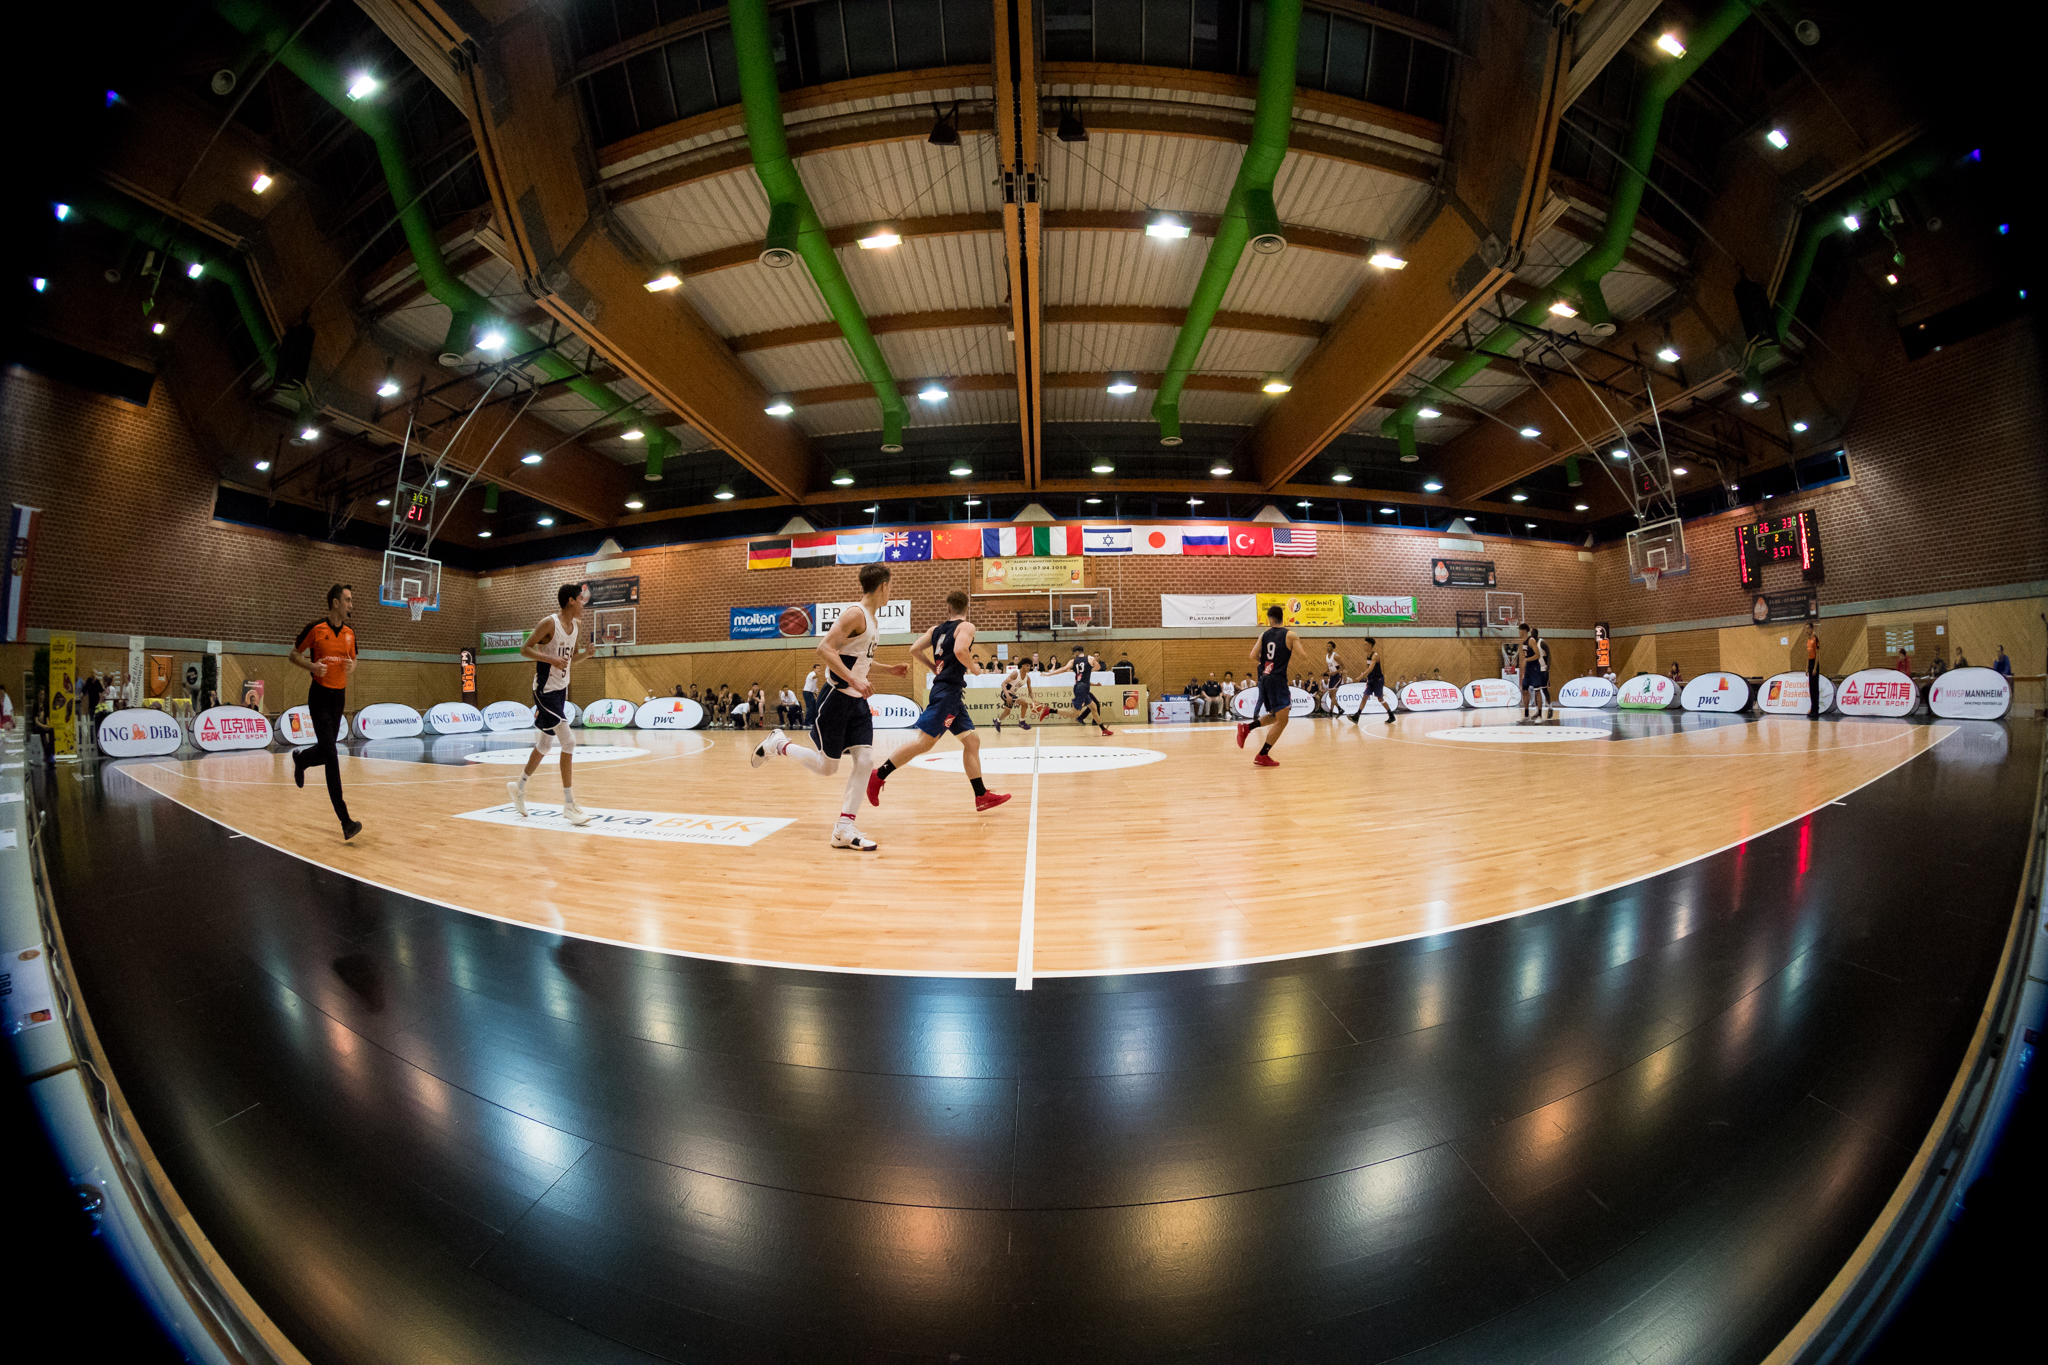 USA vs France 73:79 during Basketball Albert Schweitzer Turnier at Waldsporthalle, Viernheim, Hessen, Germany on 2018-03-31, Photo: Sven Mandel